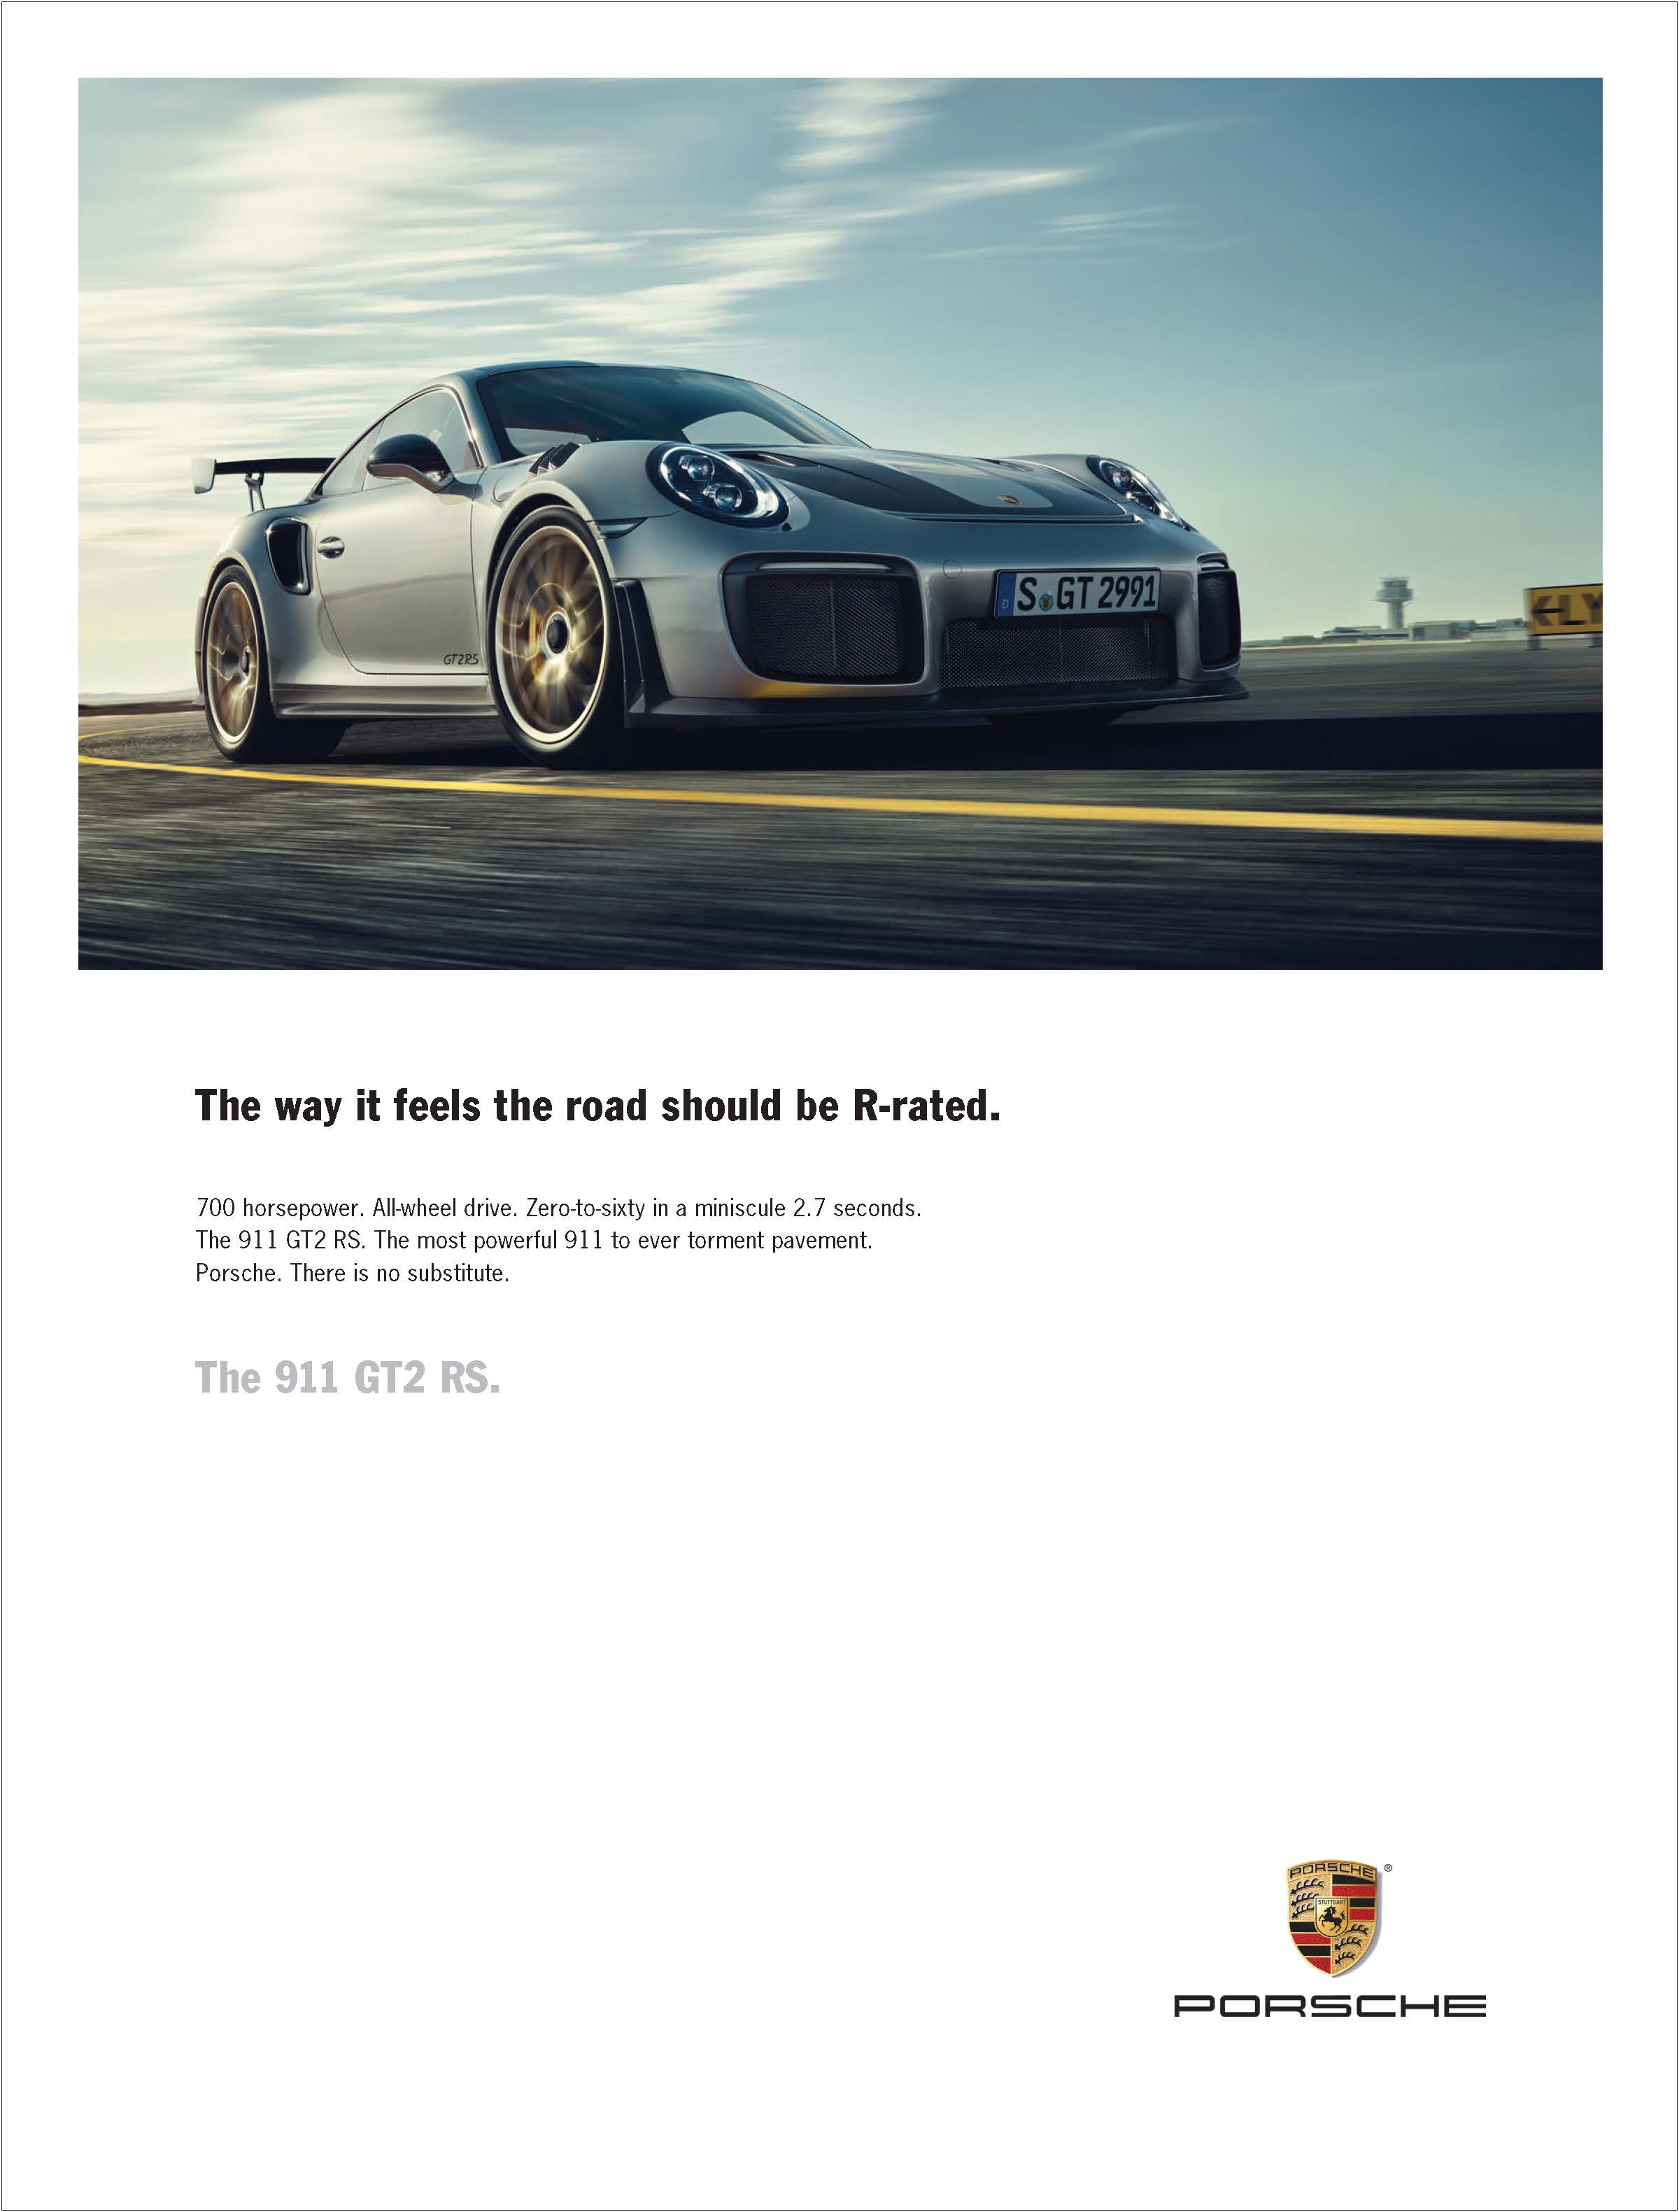 Porsche_OldCI_JD_02.21.19_Page_18.jpg